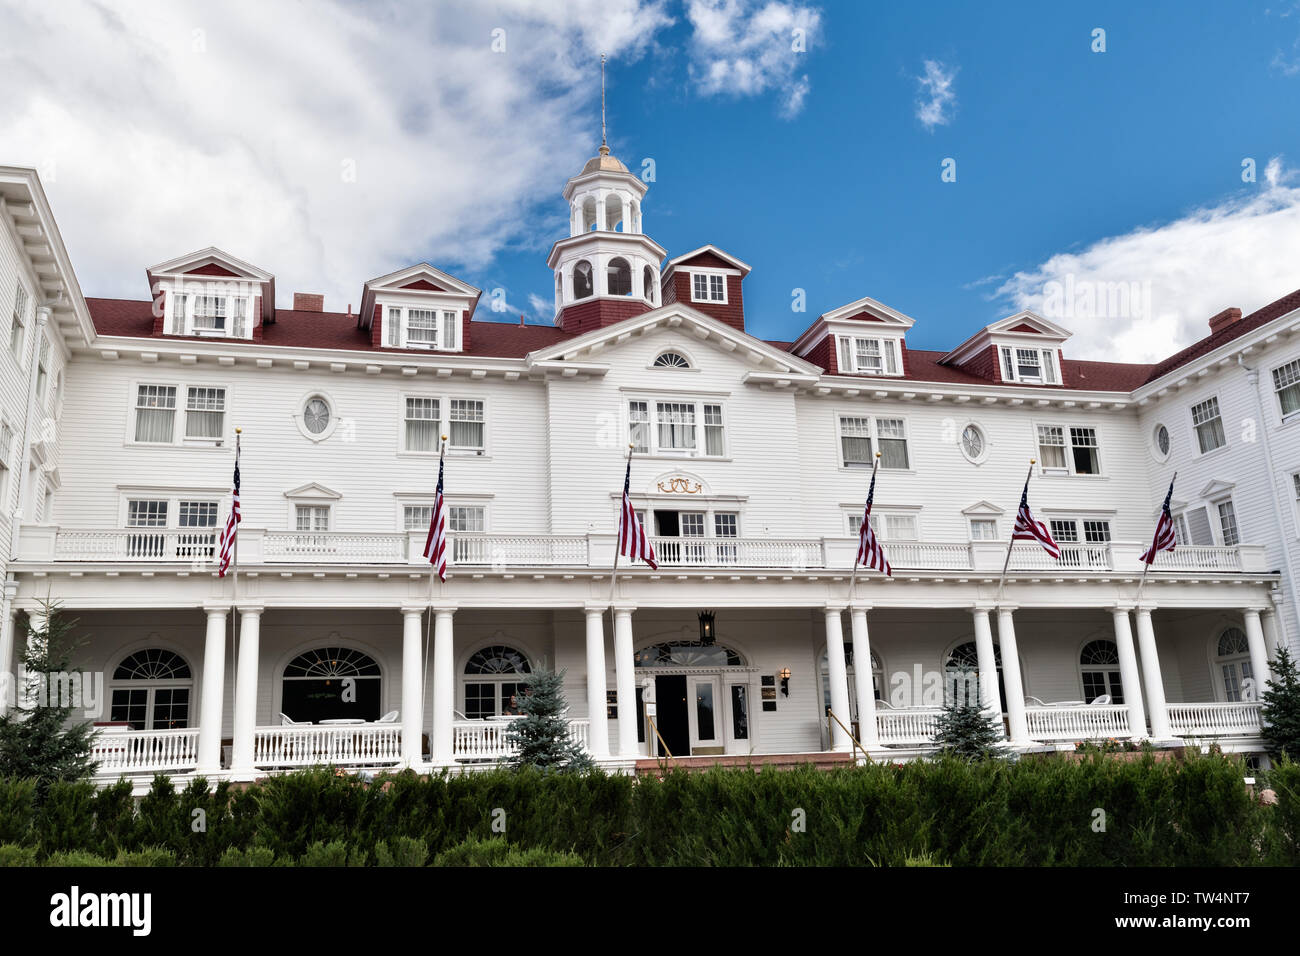 L'historique de l'Hôtel Stanley, un 142-room hotel néo-colonial construit en 1909, près de l'entrée de Rocky Mountain National Park de Estes Park, Colorado. L'hôtel inspiré de l'hôtel donnent sur dans le roman de Stephen King The Shining. Banque D'Images